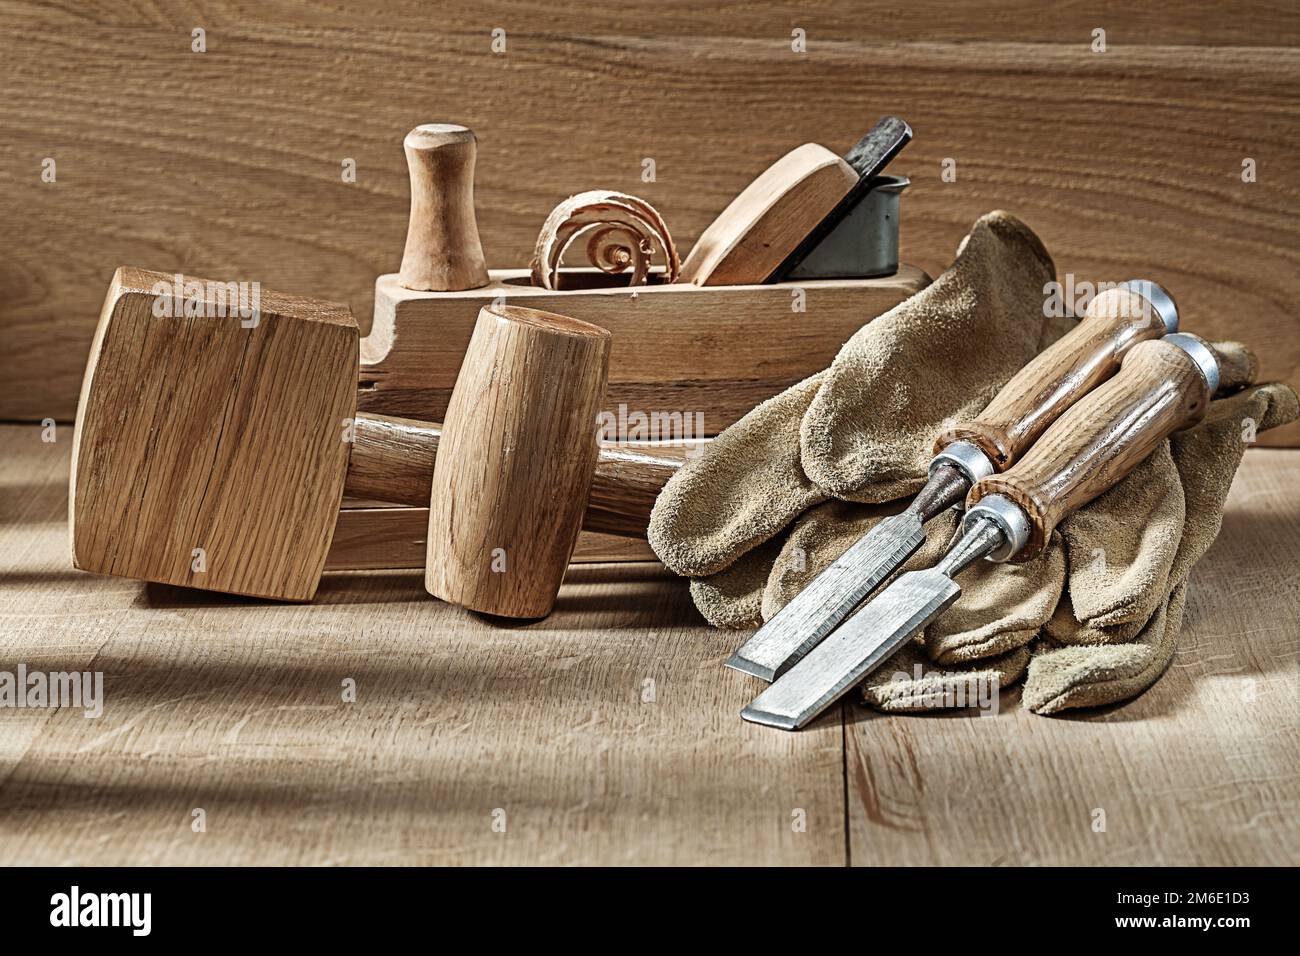 Composición de herramientas de carpintería sobre tablas de madera.